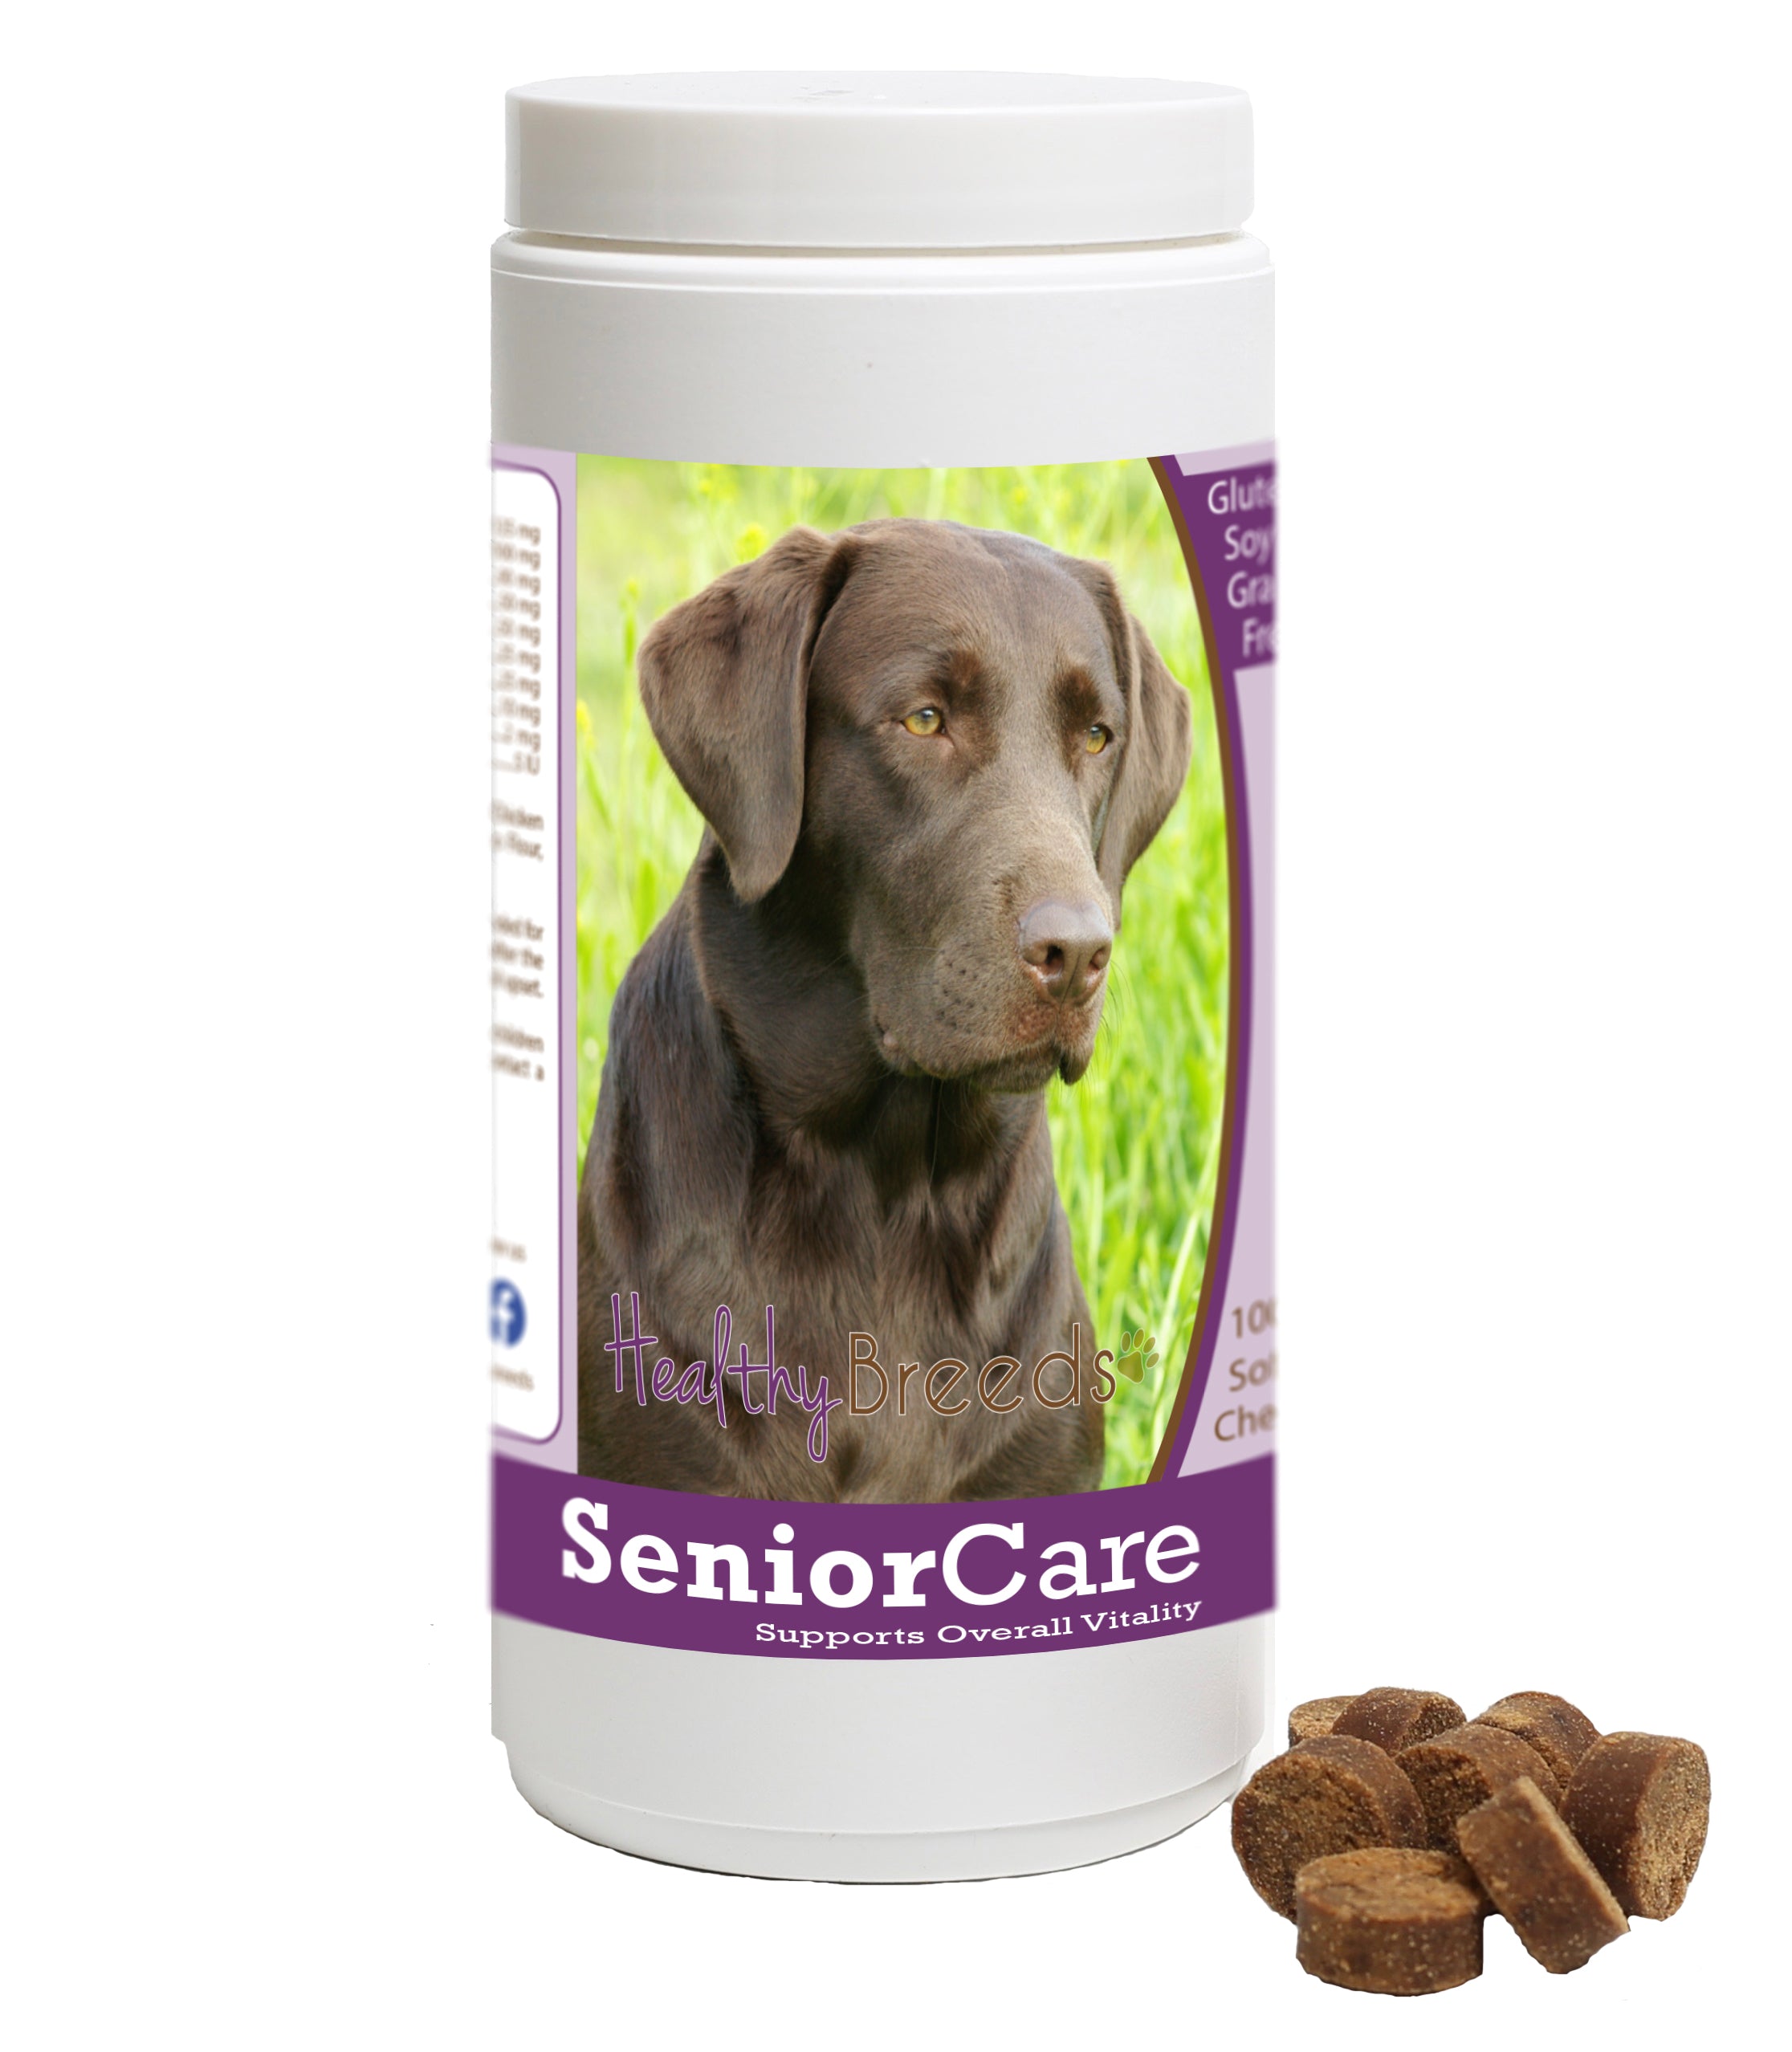 Healthy Breeds Senior Dog Care Soft Chews - Shiba Inu